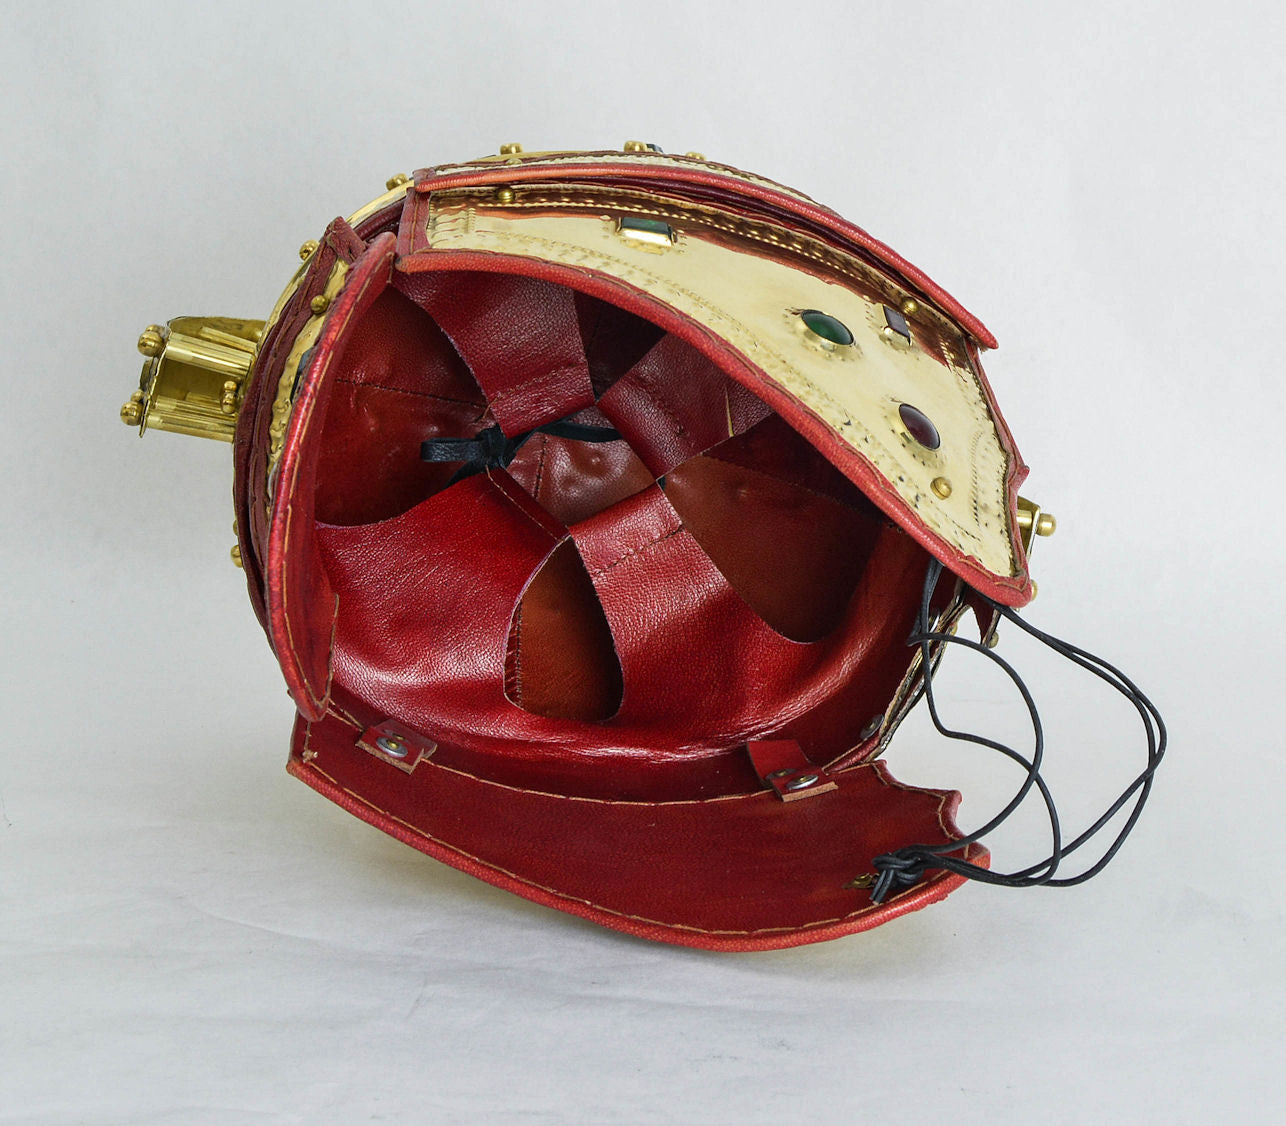 Late Roman Officer's Berkasovo Helmet - 18 Gauge